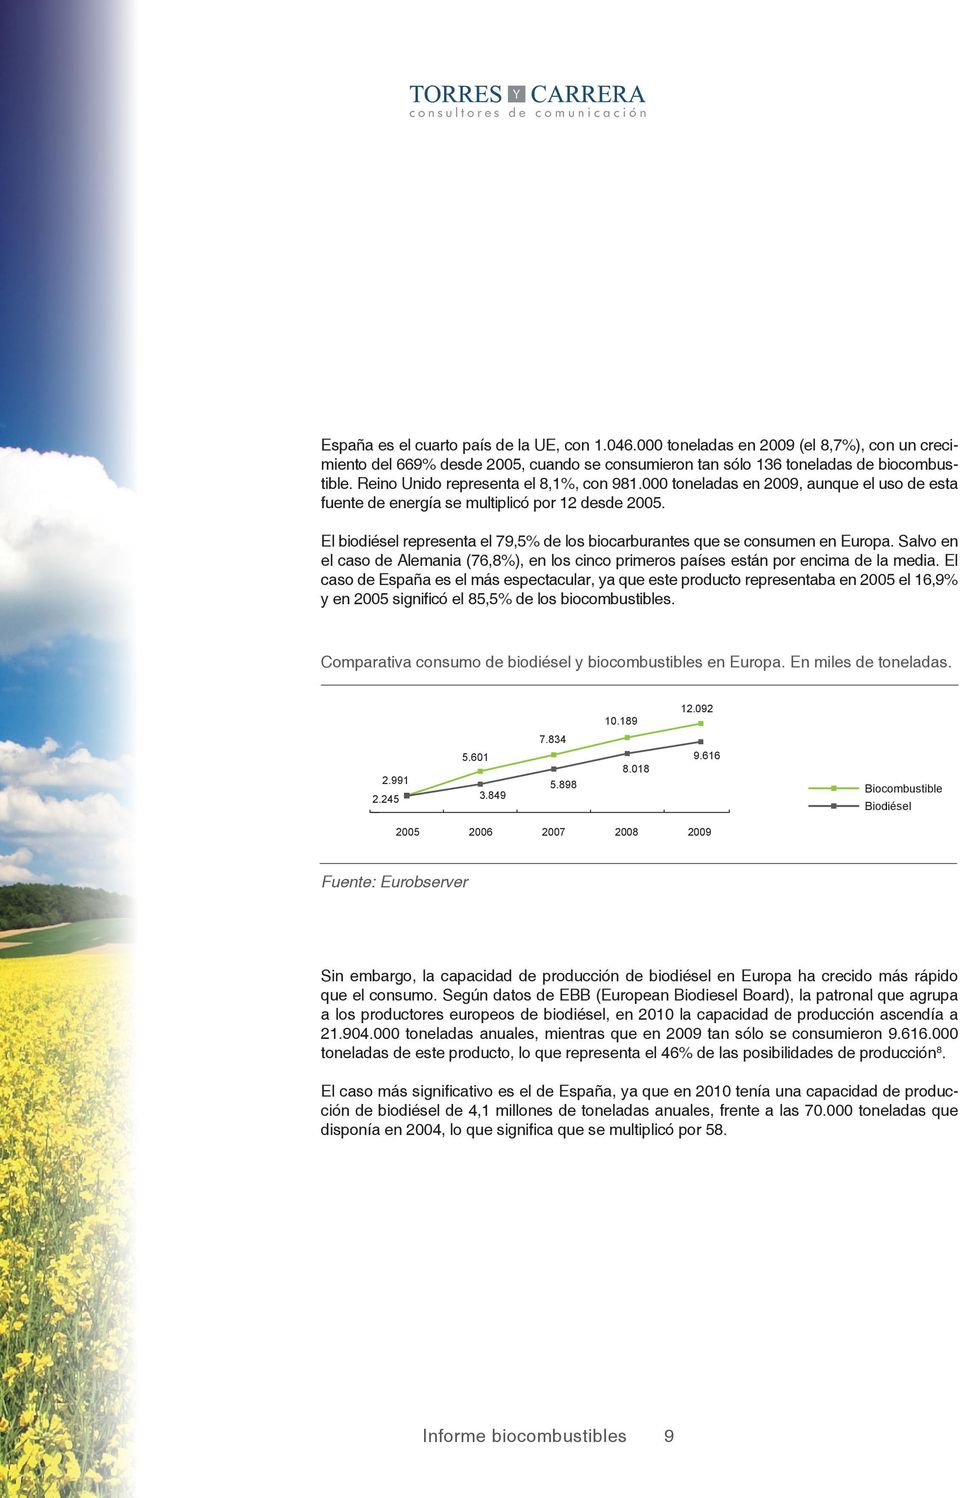 El biodiésel representa el 79,5% de los biocarburantes que se consumen en Europa. Salvo en el caso de Alemania (76,8%), en los cinco primeros países están por encima de la media.